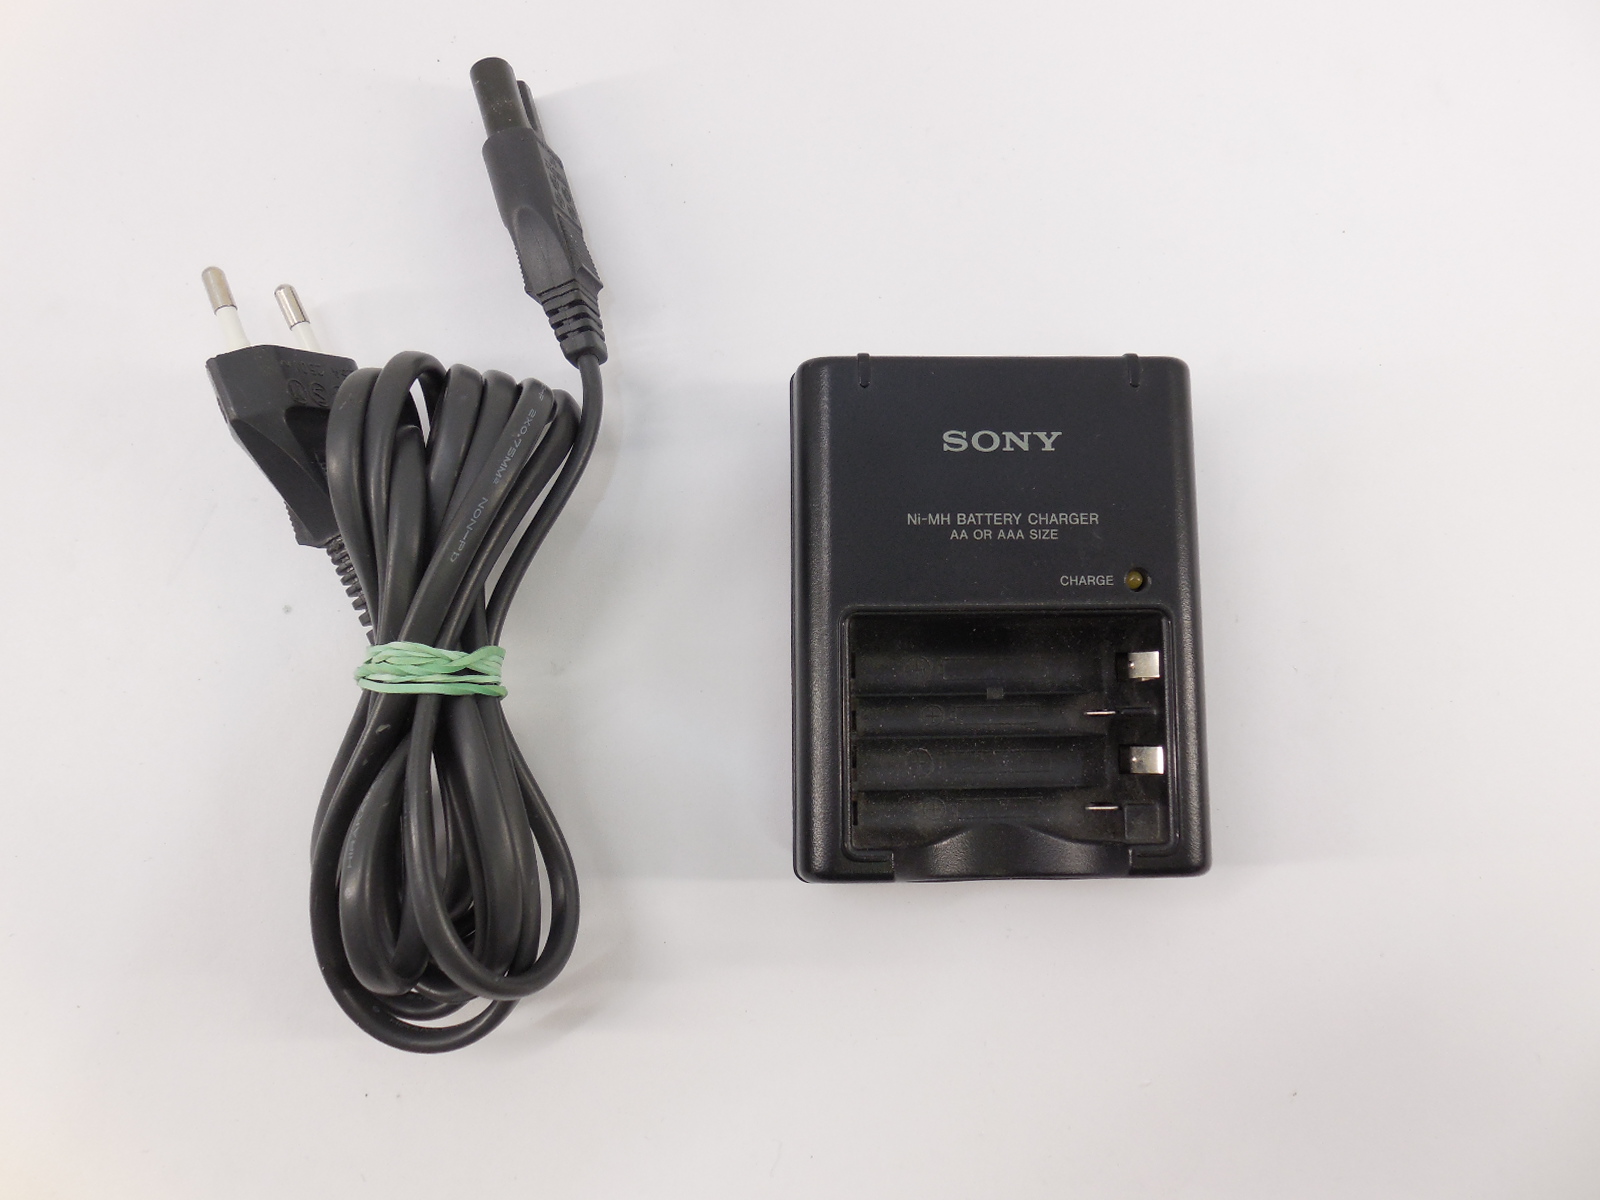 Купить зарядку sony. Sony BC-cs2b. Sony DPF-v900. Зарядка Sony DC-cs2b. Зарядка сони 13 ватт.